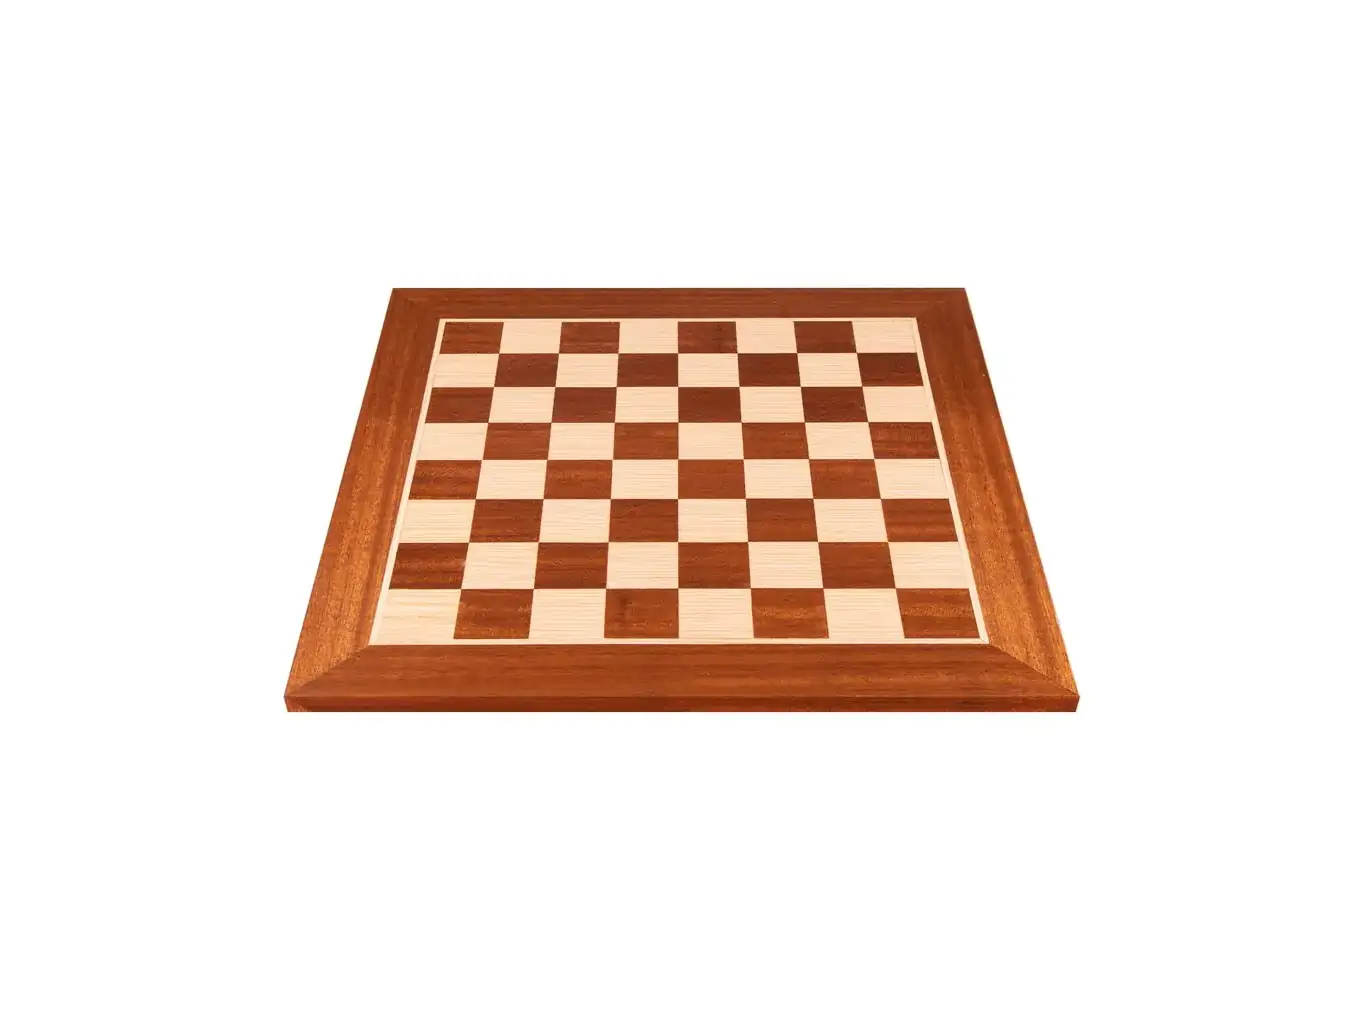 Ξύλινη σκακιέρα μαόνι και δρυς 50x50 | Χειροποίητη ξύλινη σκακιέρα